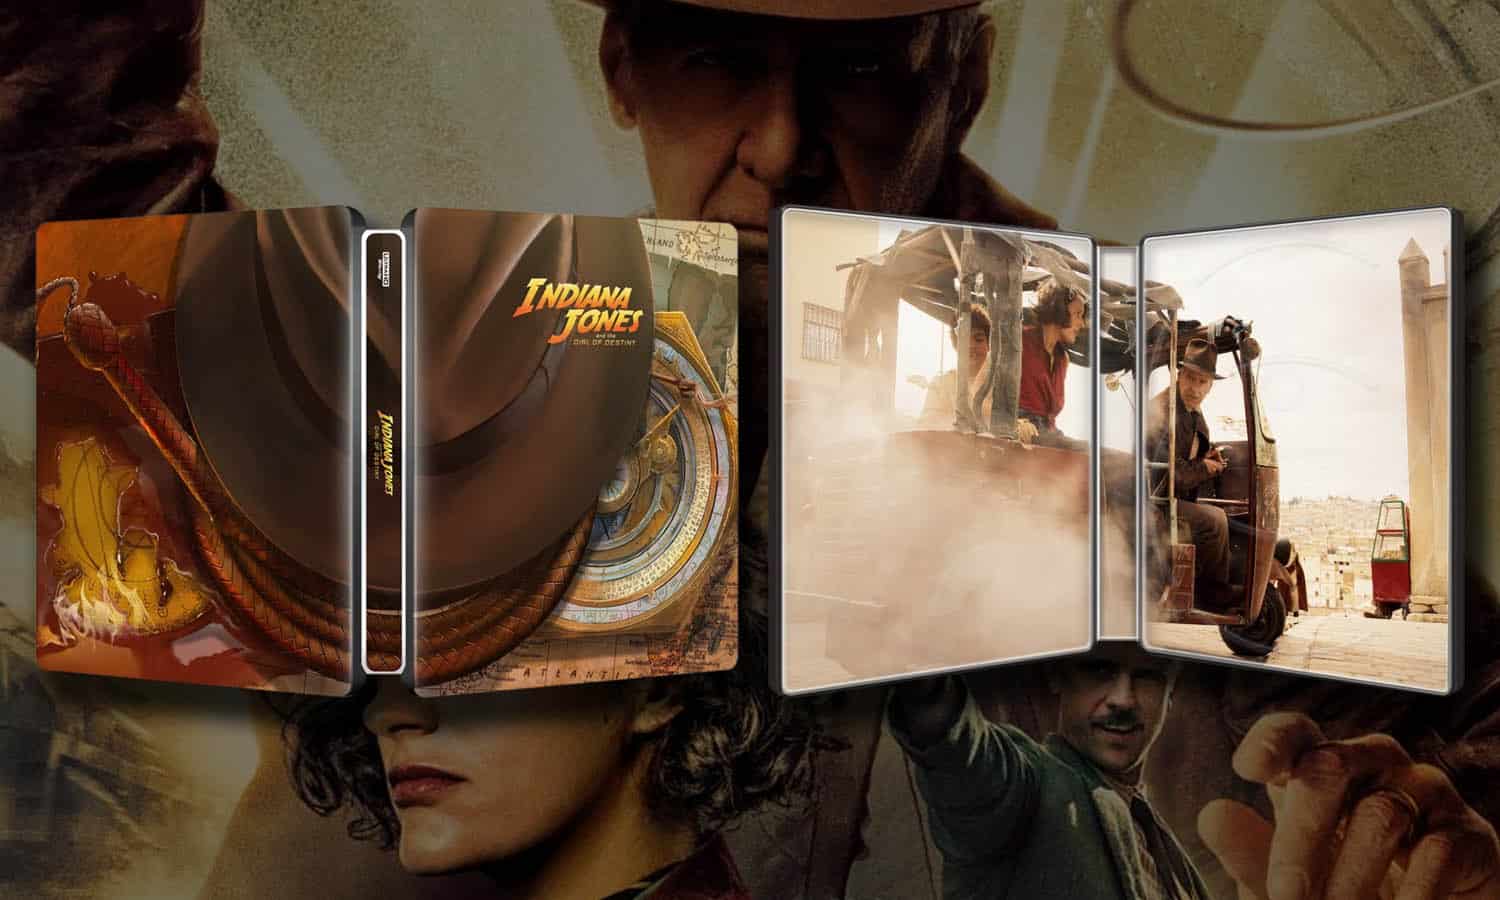 Indiana Jones 5 Cadran de la Destinee Steelbook 4K